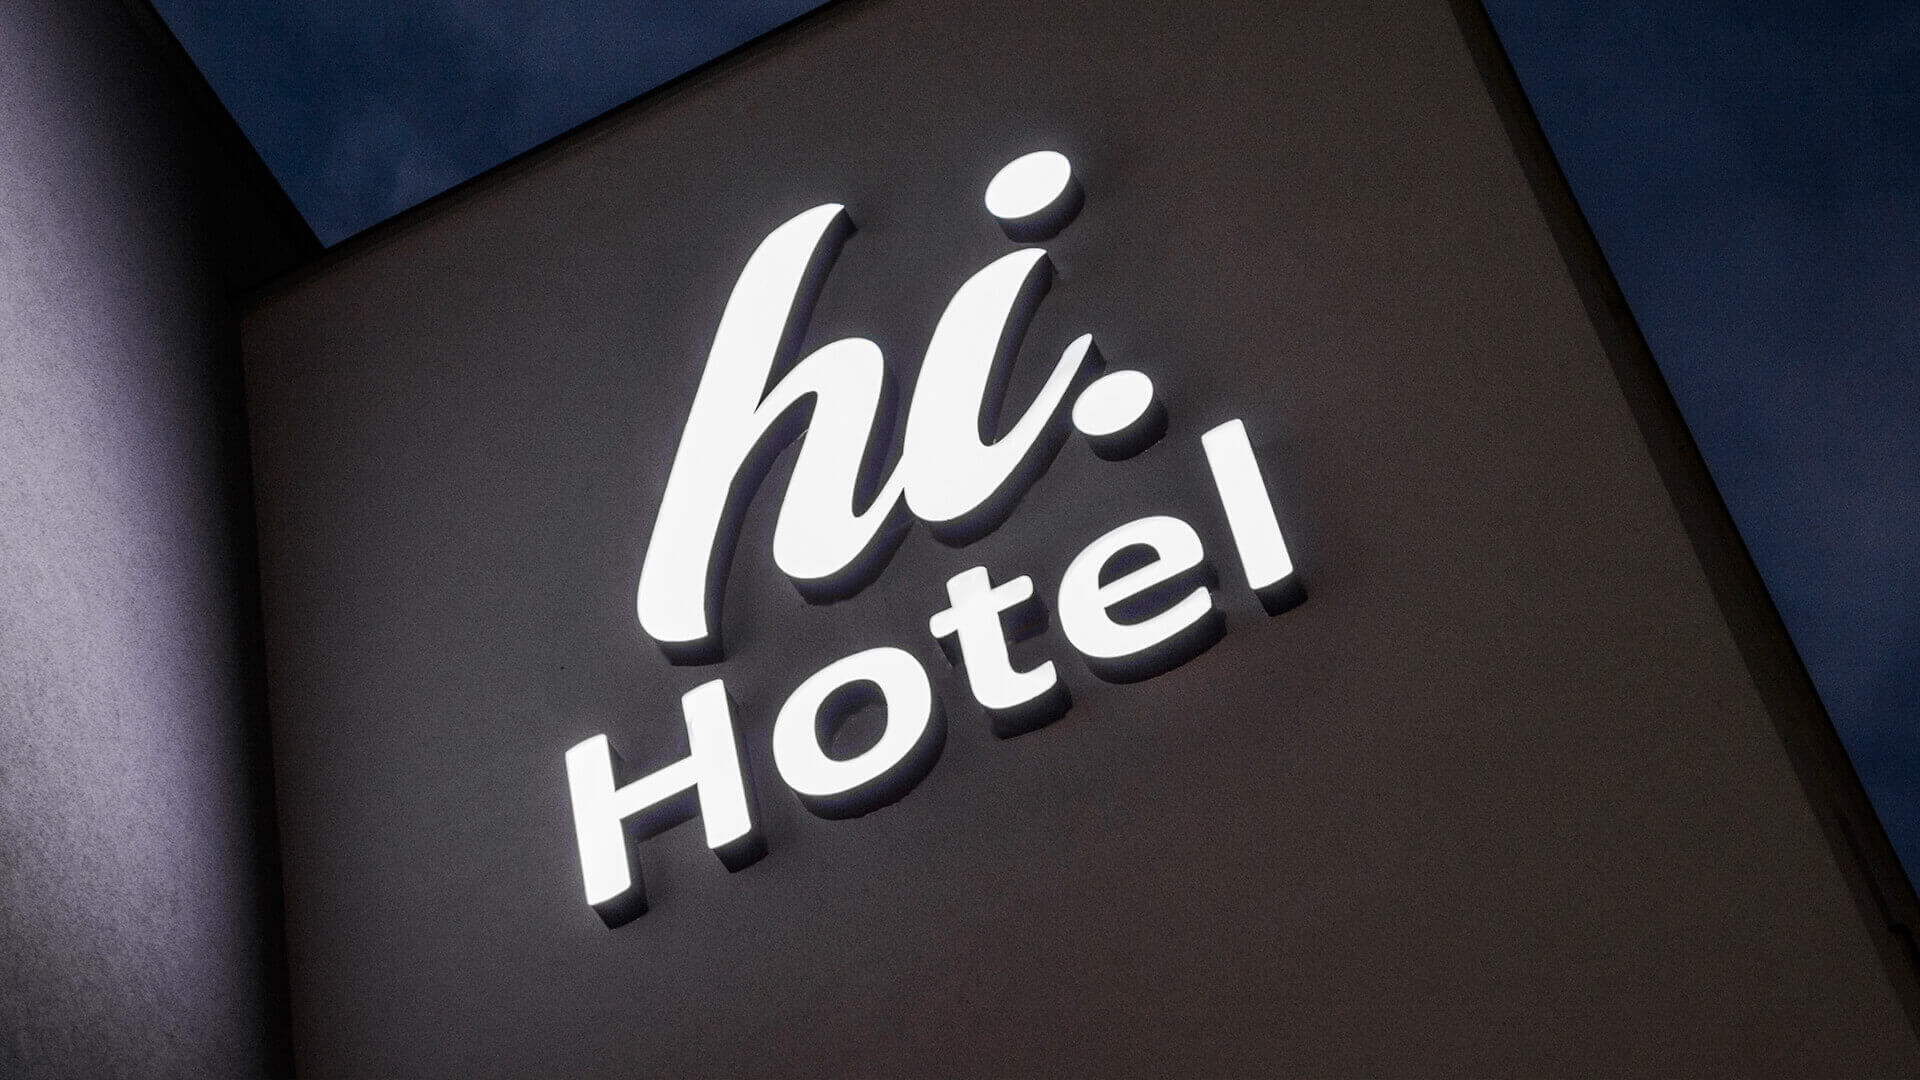 Hola hotel hihotel - hi-hotel-neón-en-la-pared-neón-detrás-del-panel-neón-de-la-luz-neón-en-la-entrada-neón-en-la-altura-neón-líneas-neón-color-blanco-logo-de-la-firma-neón-en-concreto-gdansk-lotnisko (4)